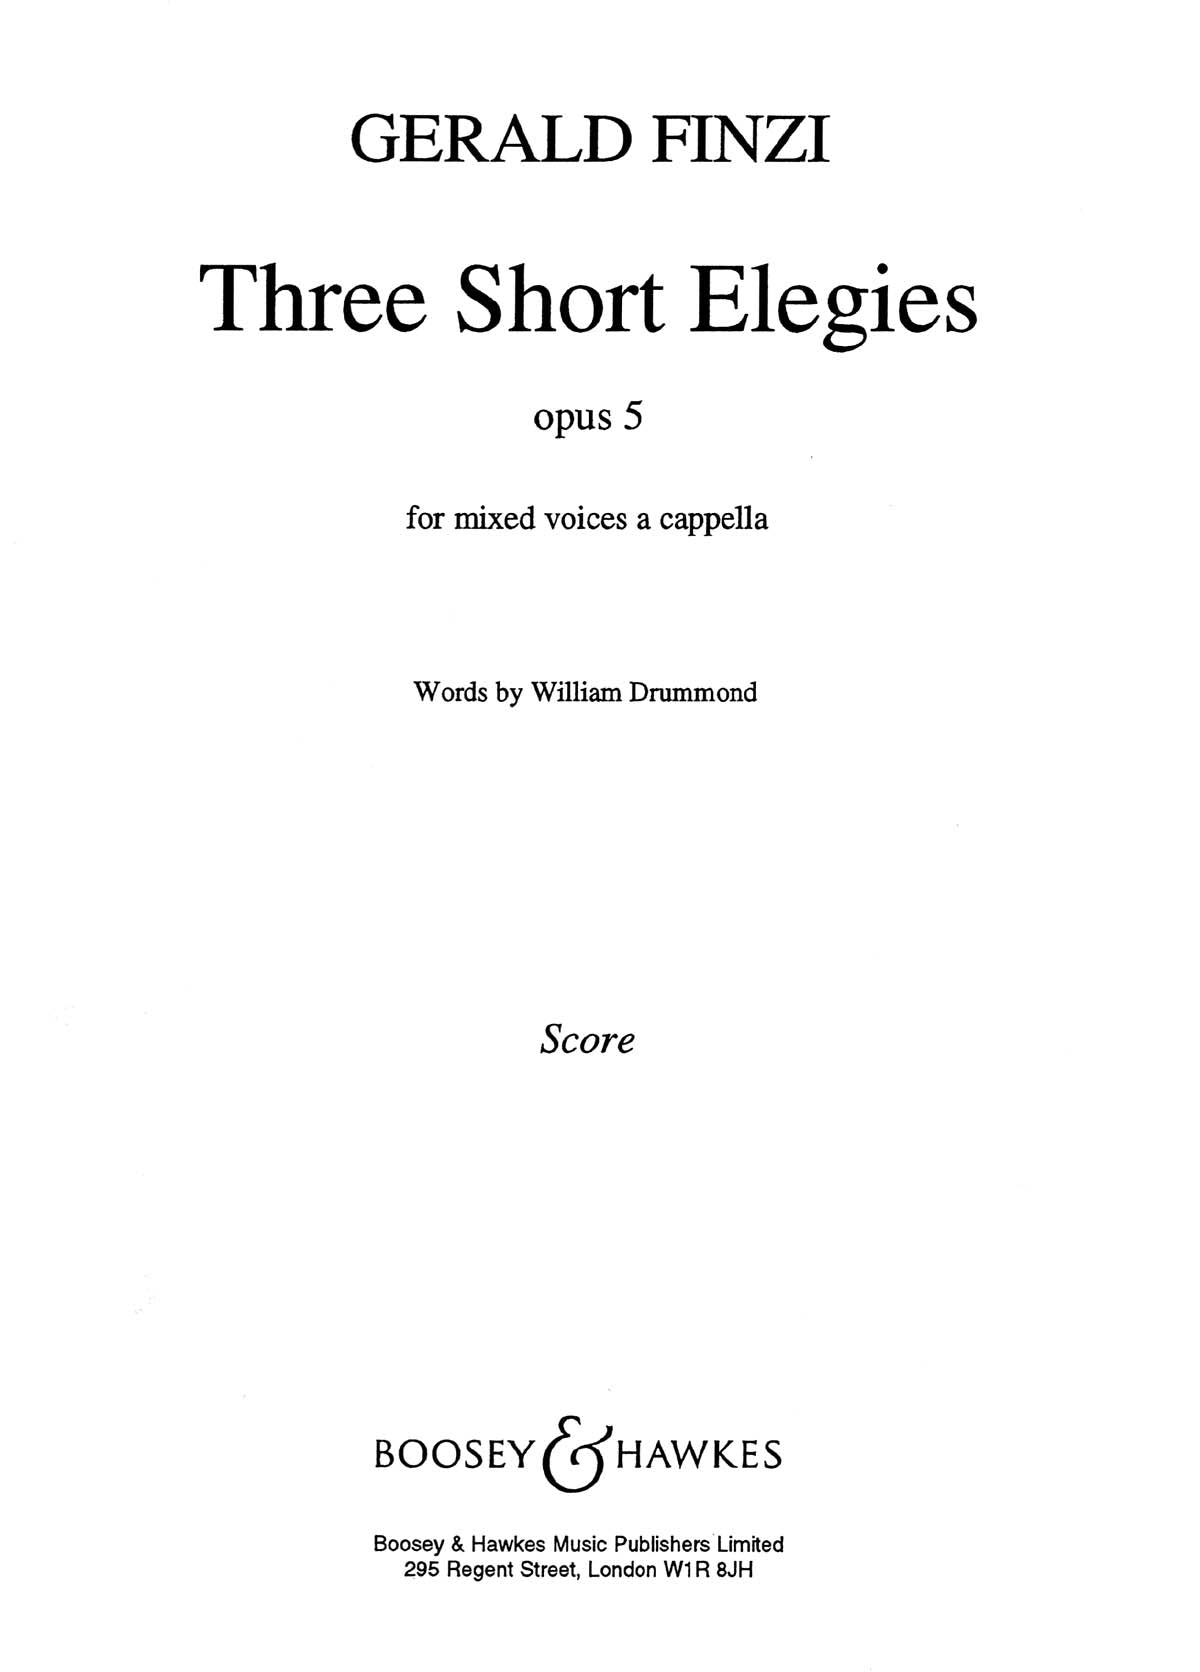 Finzi: 3 Short Elegies, Op. 5